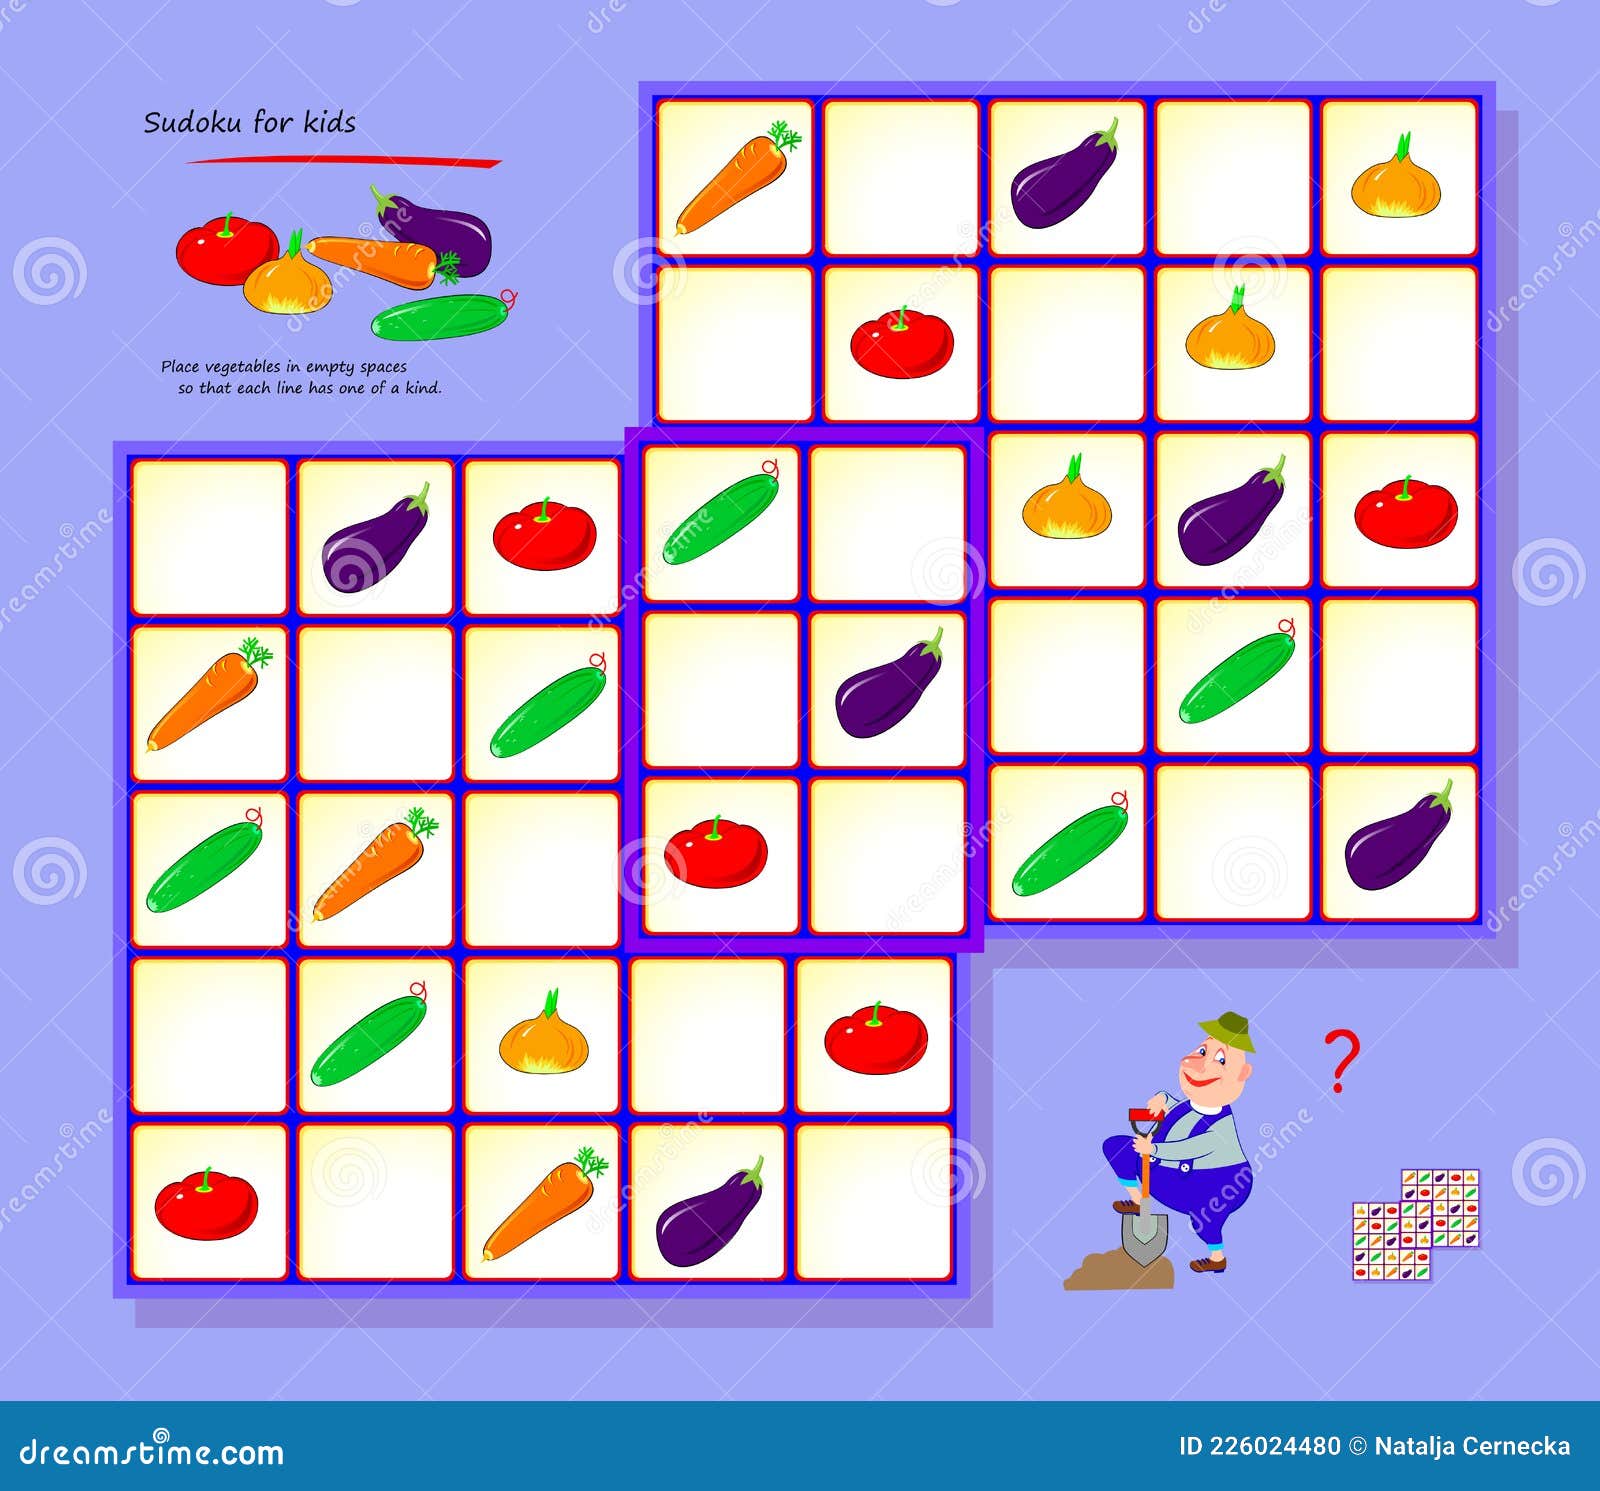 Sudoku Para Niños. Página Para Libro De Bromas De Cerebro. Juego De Rompecabezas Lógico Para Niños Y Adultos. Jugar En Línea. Ilustración del Vector - Ilustración de dificultad, 226024480